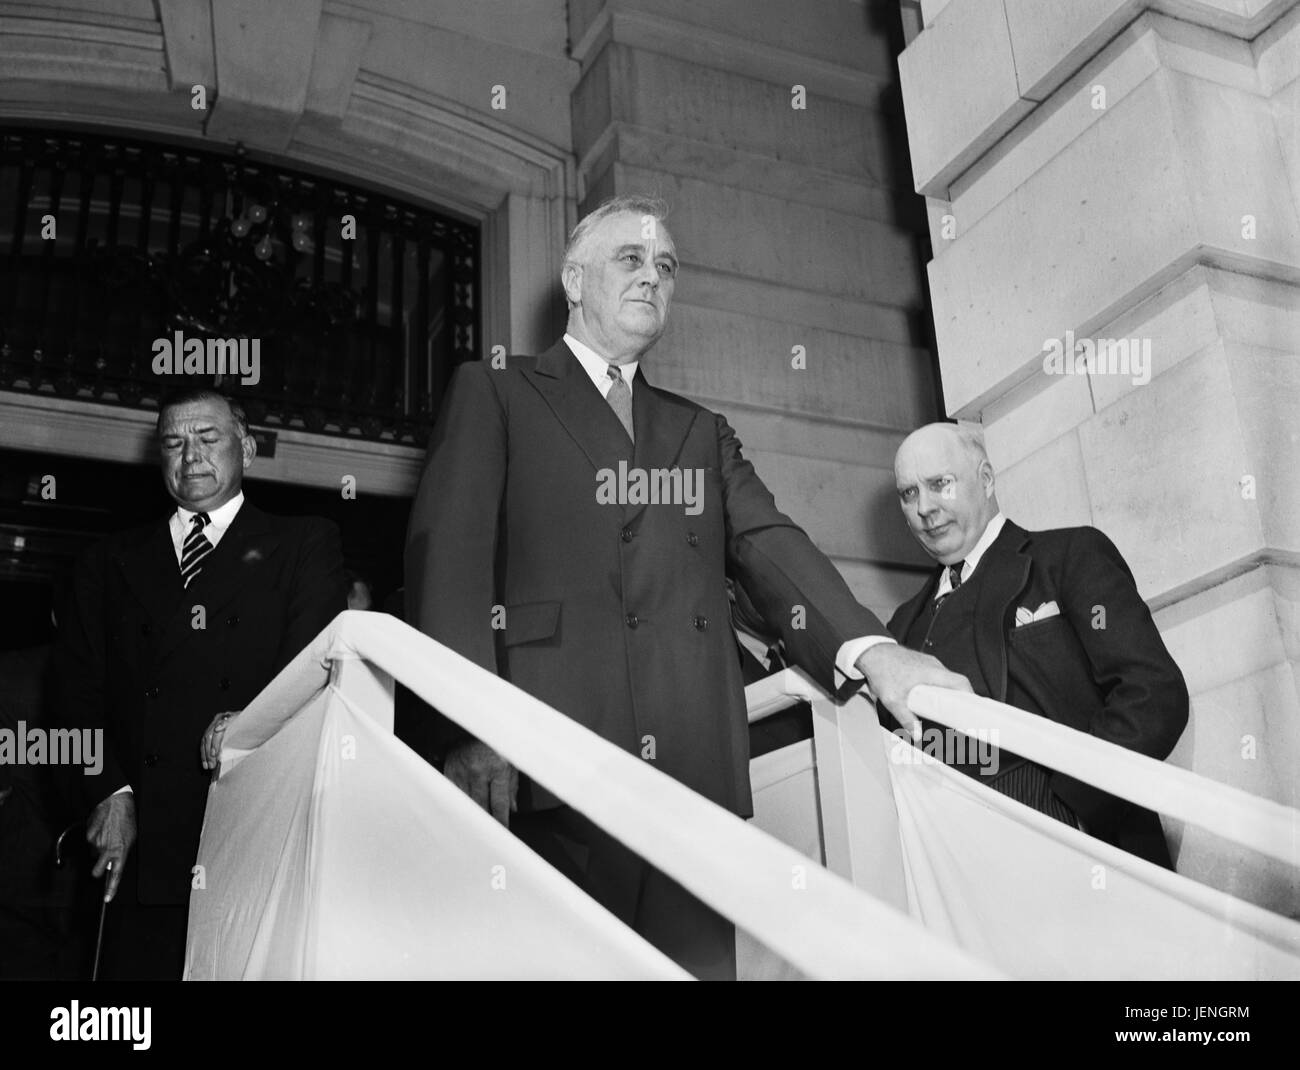 Stati Uniti Il presidente Franklin Roosevelt lasciando U.S. Capitol Building dopo aver affrontato la sessione congiunta del Congresso a Washington DC, USA, Harris & Ewing, 21 Settembre 1939 Foto Stock